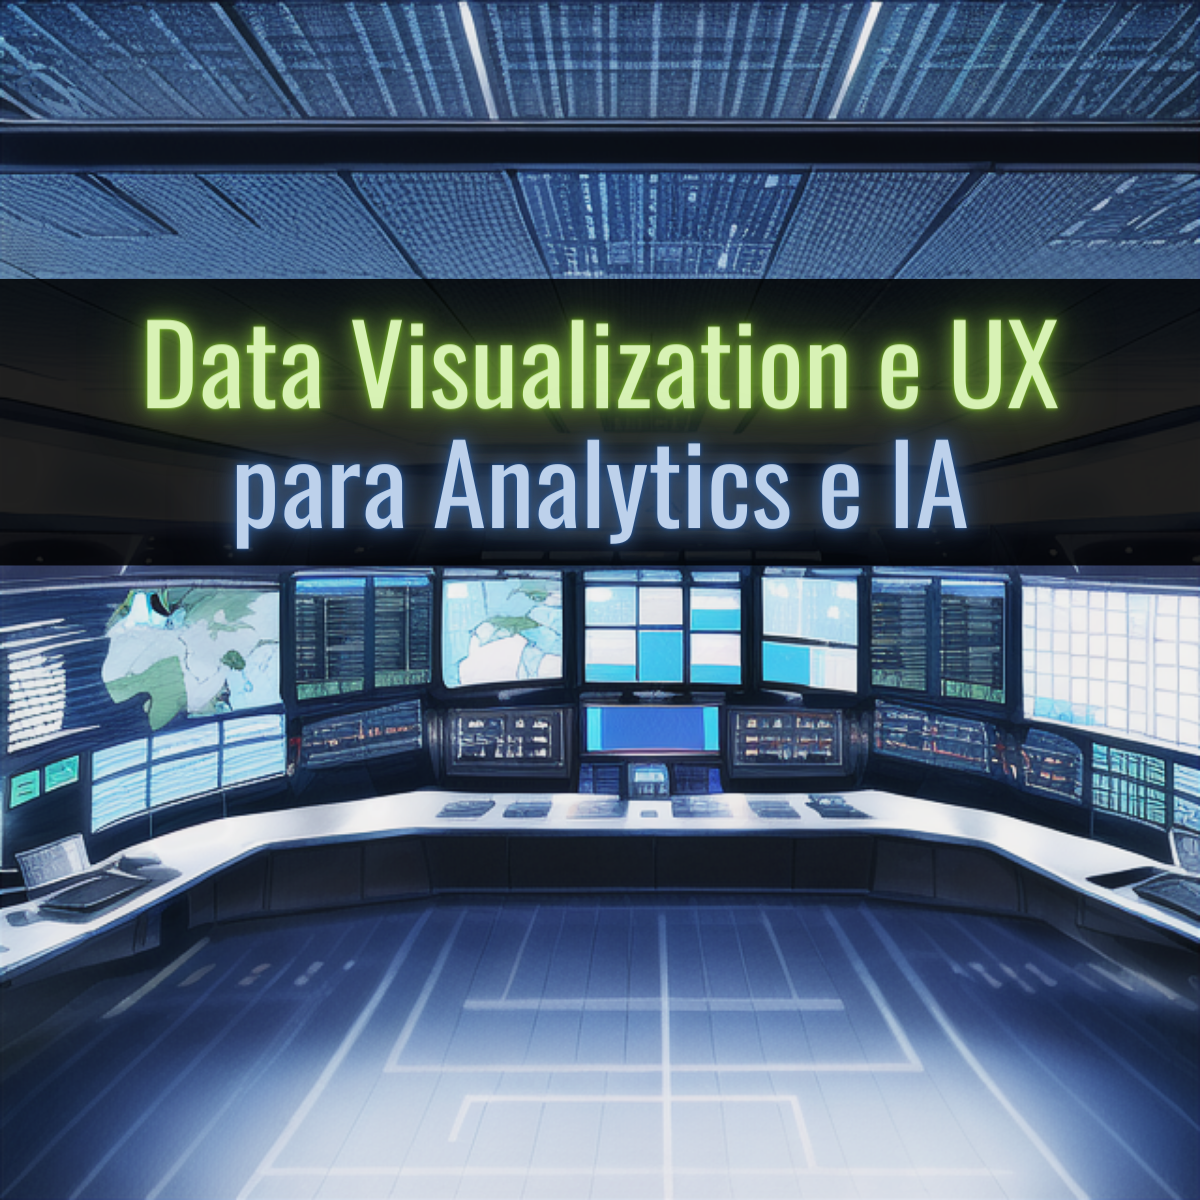 Data Visualization e UX para Analytics & IA